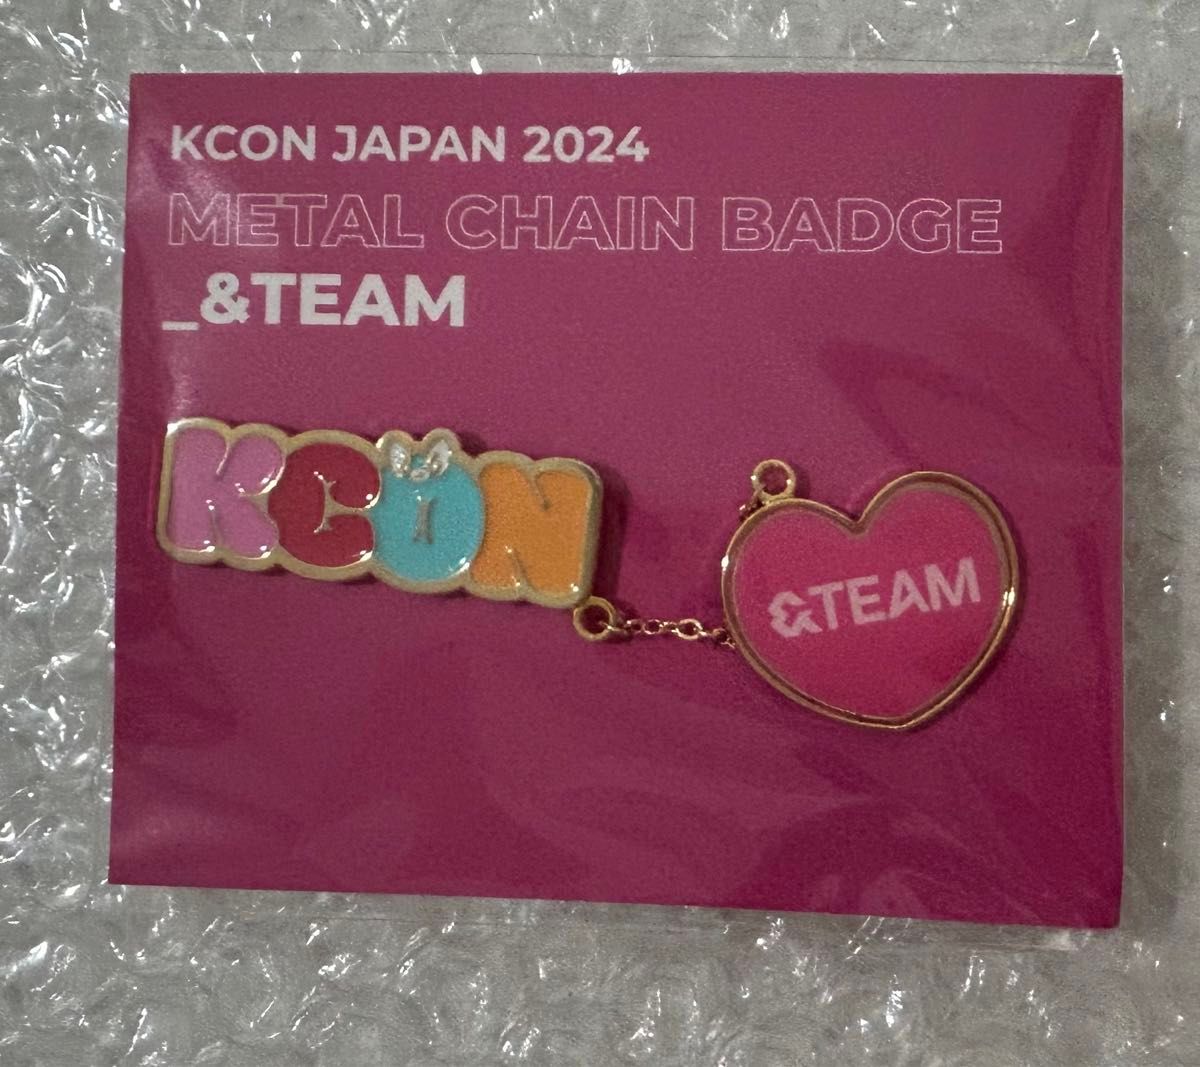 &TEAM KCON JAPAN 2024 メタルチェーンバッジ ピンバッジ